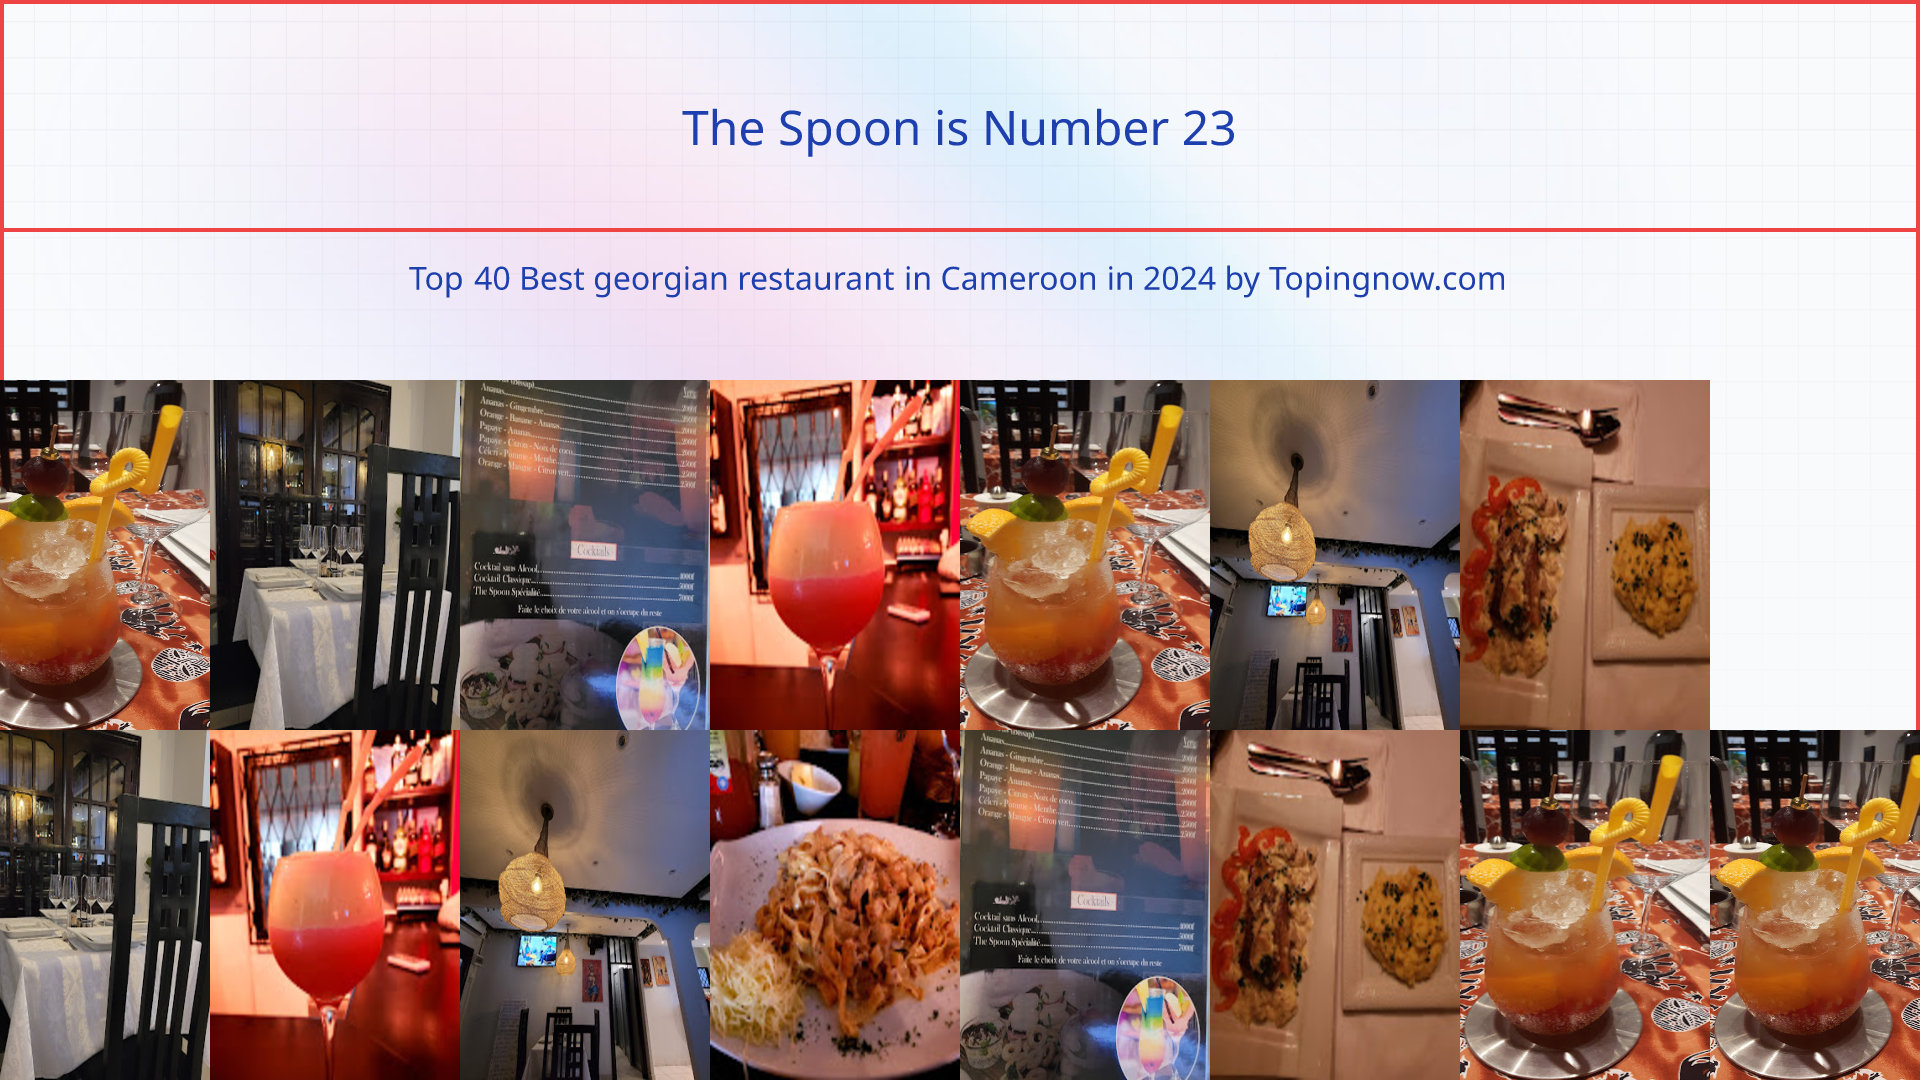 The Spoon: Top 40 Best georgian restaurant in Cameroon in 2024